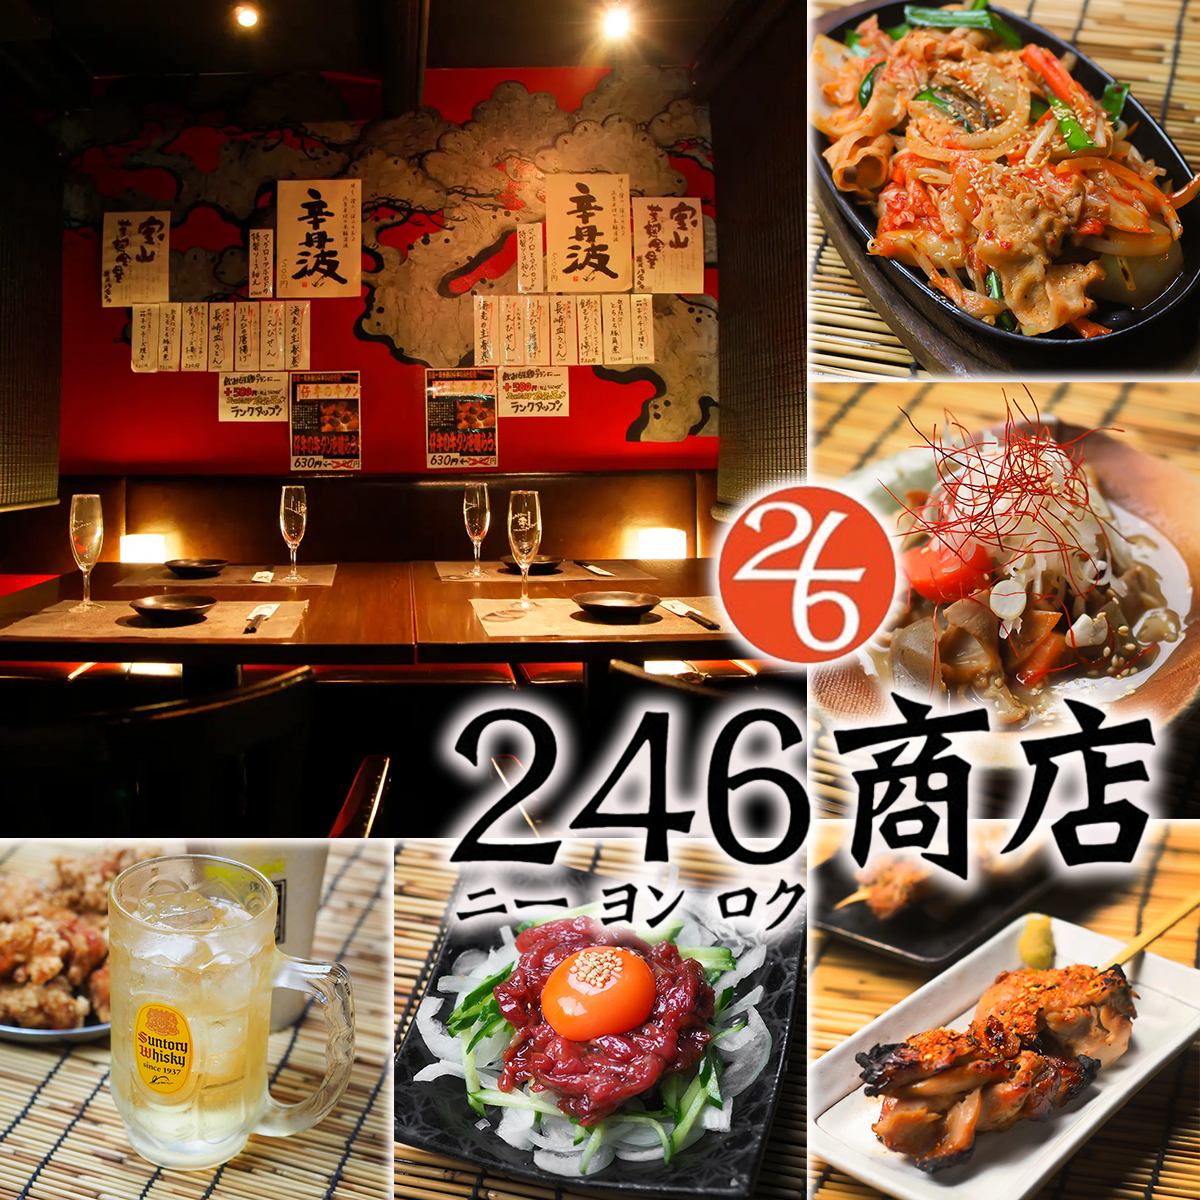 餐点和饮料均价为200日元、400日元、600日元的人气居酒屋！秋季和冬季还提供无限量吃喝！